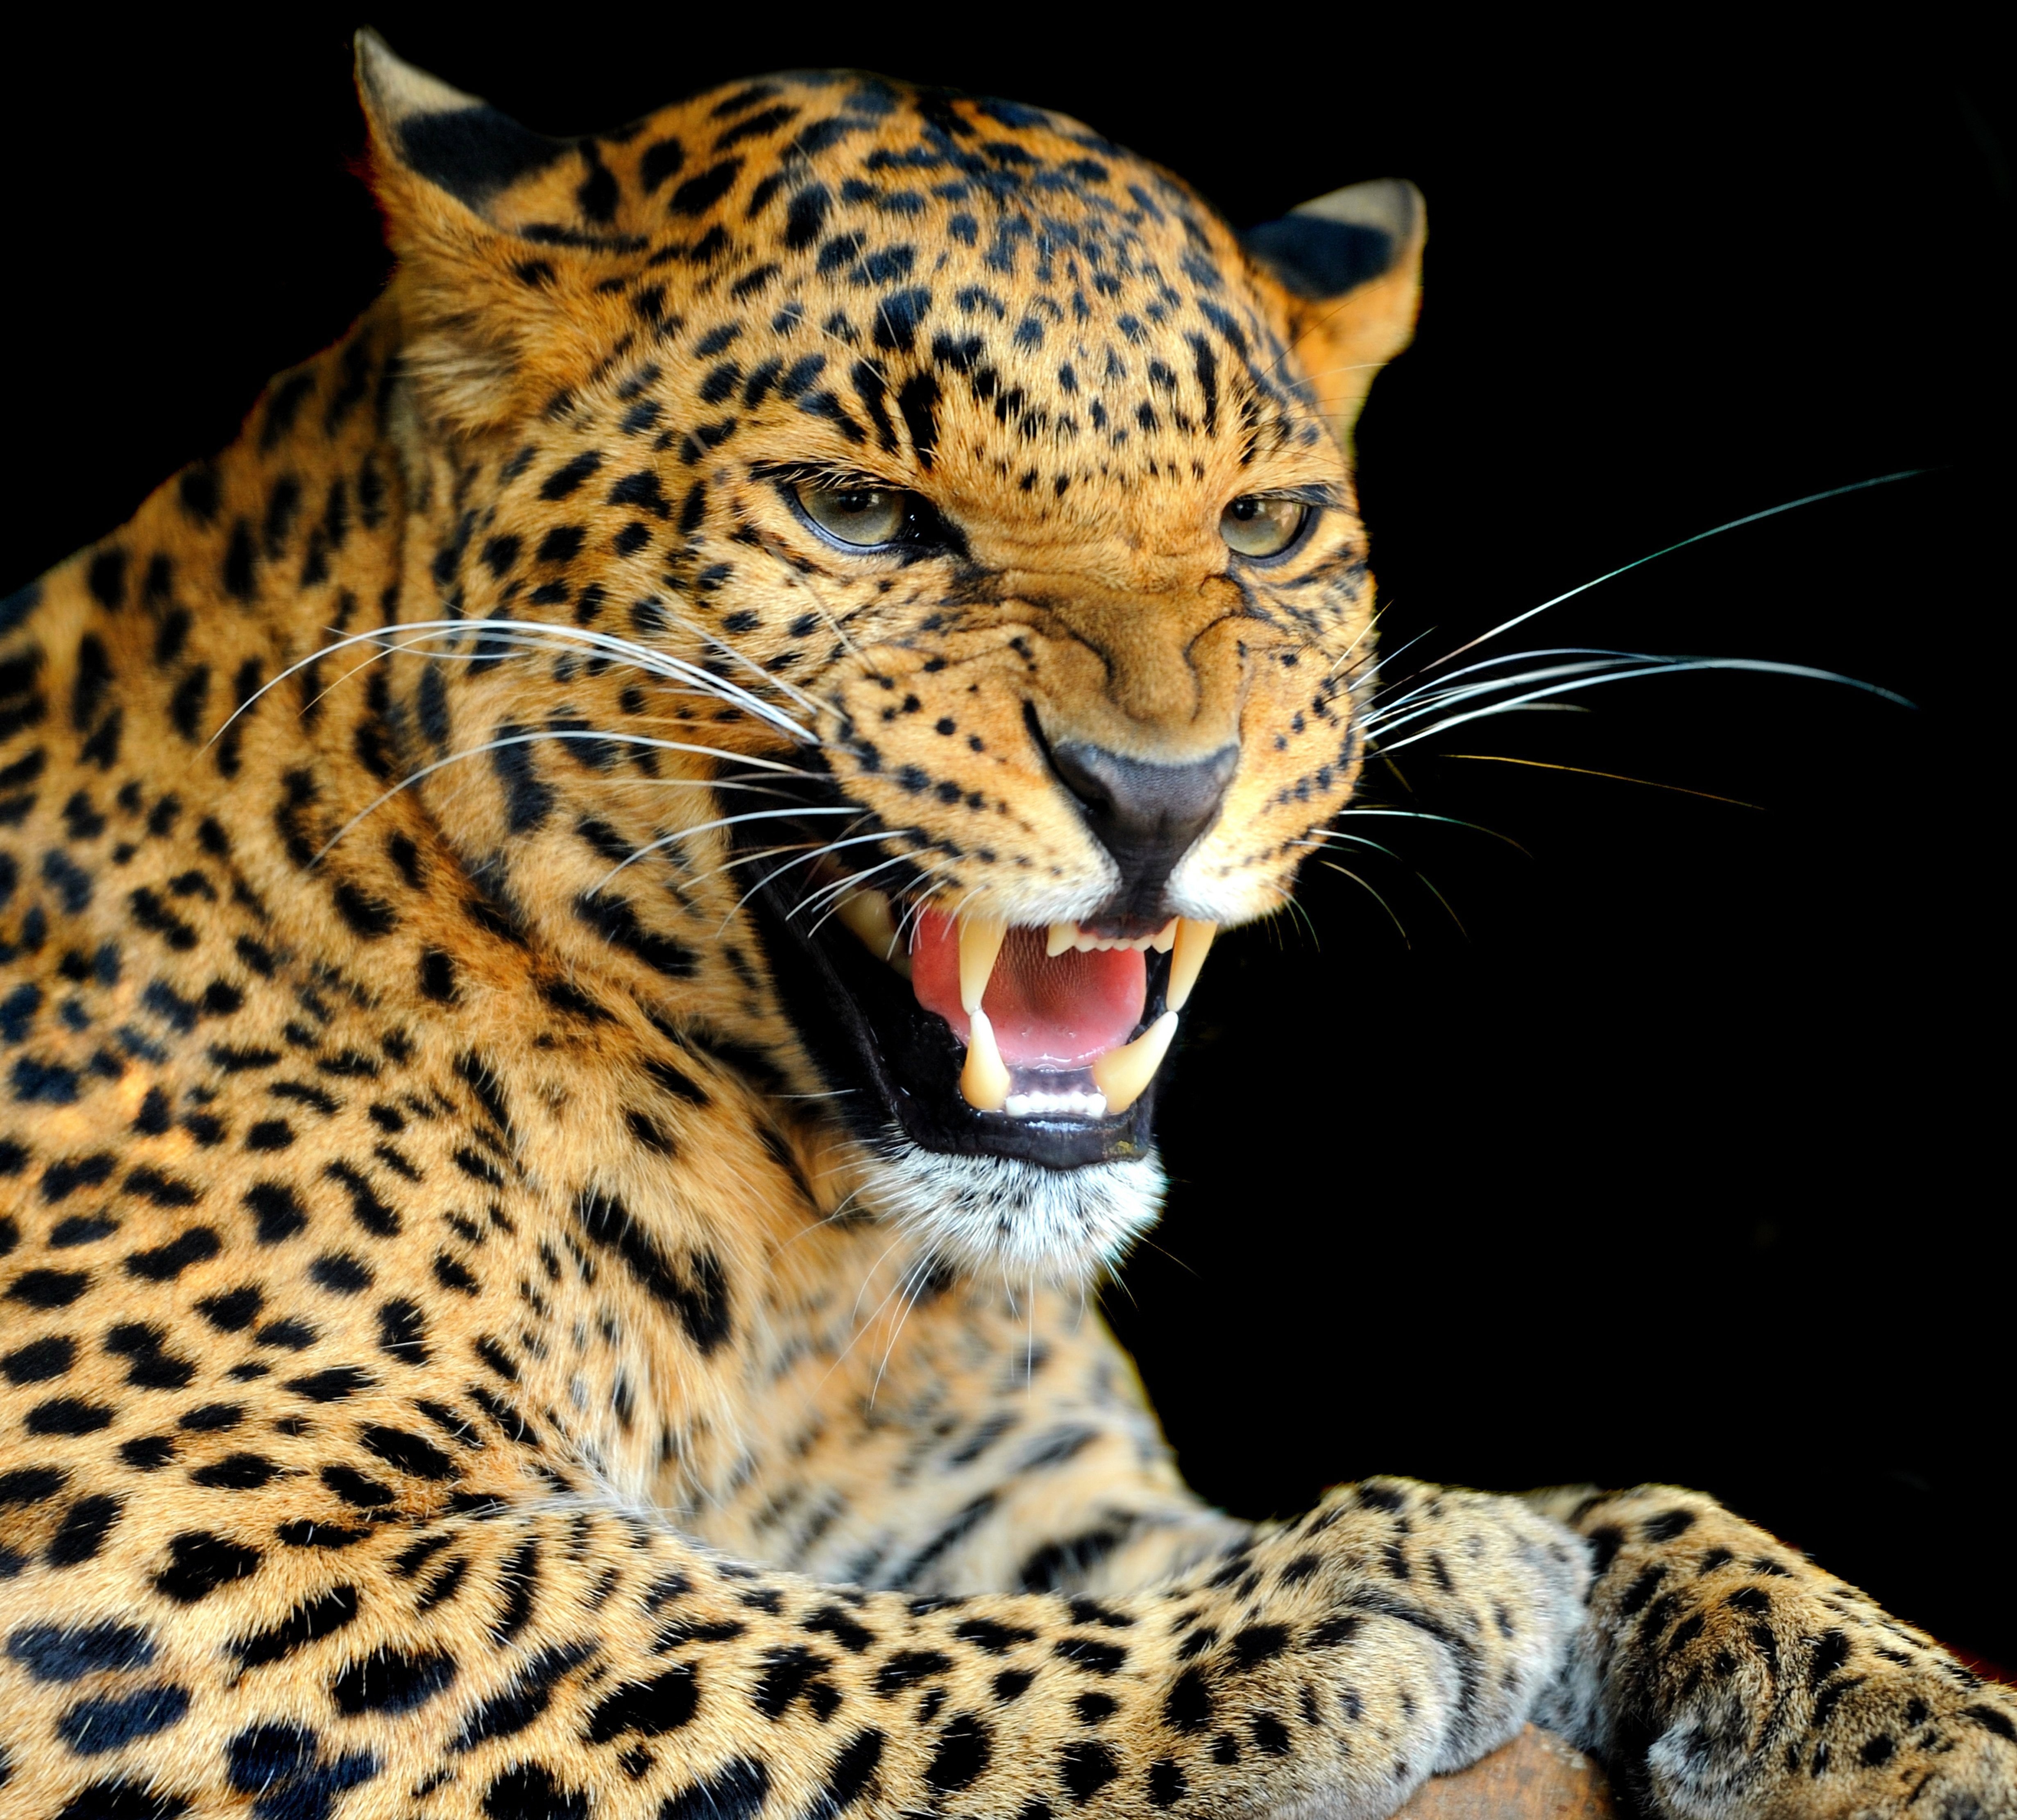 Animals Jaguars Big Cats Mammals 4924x4444